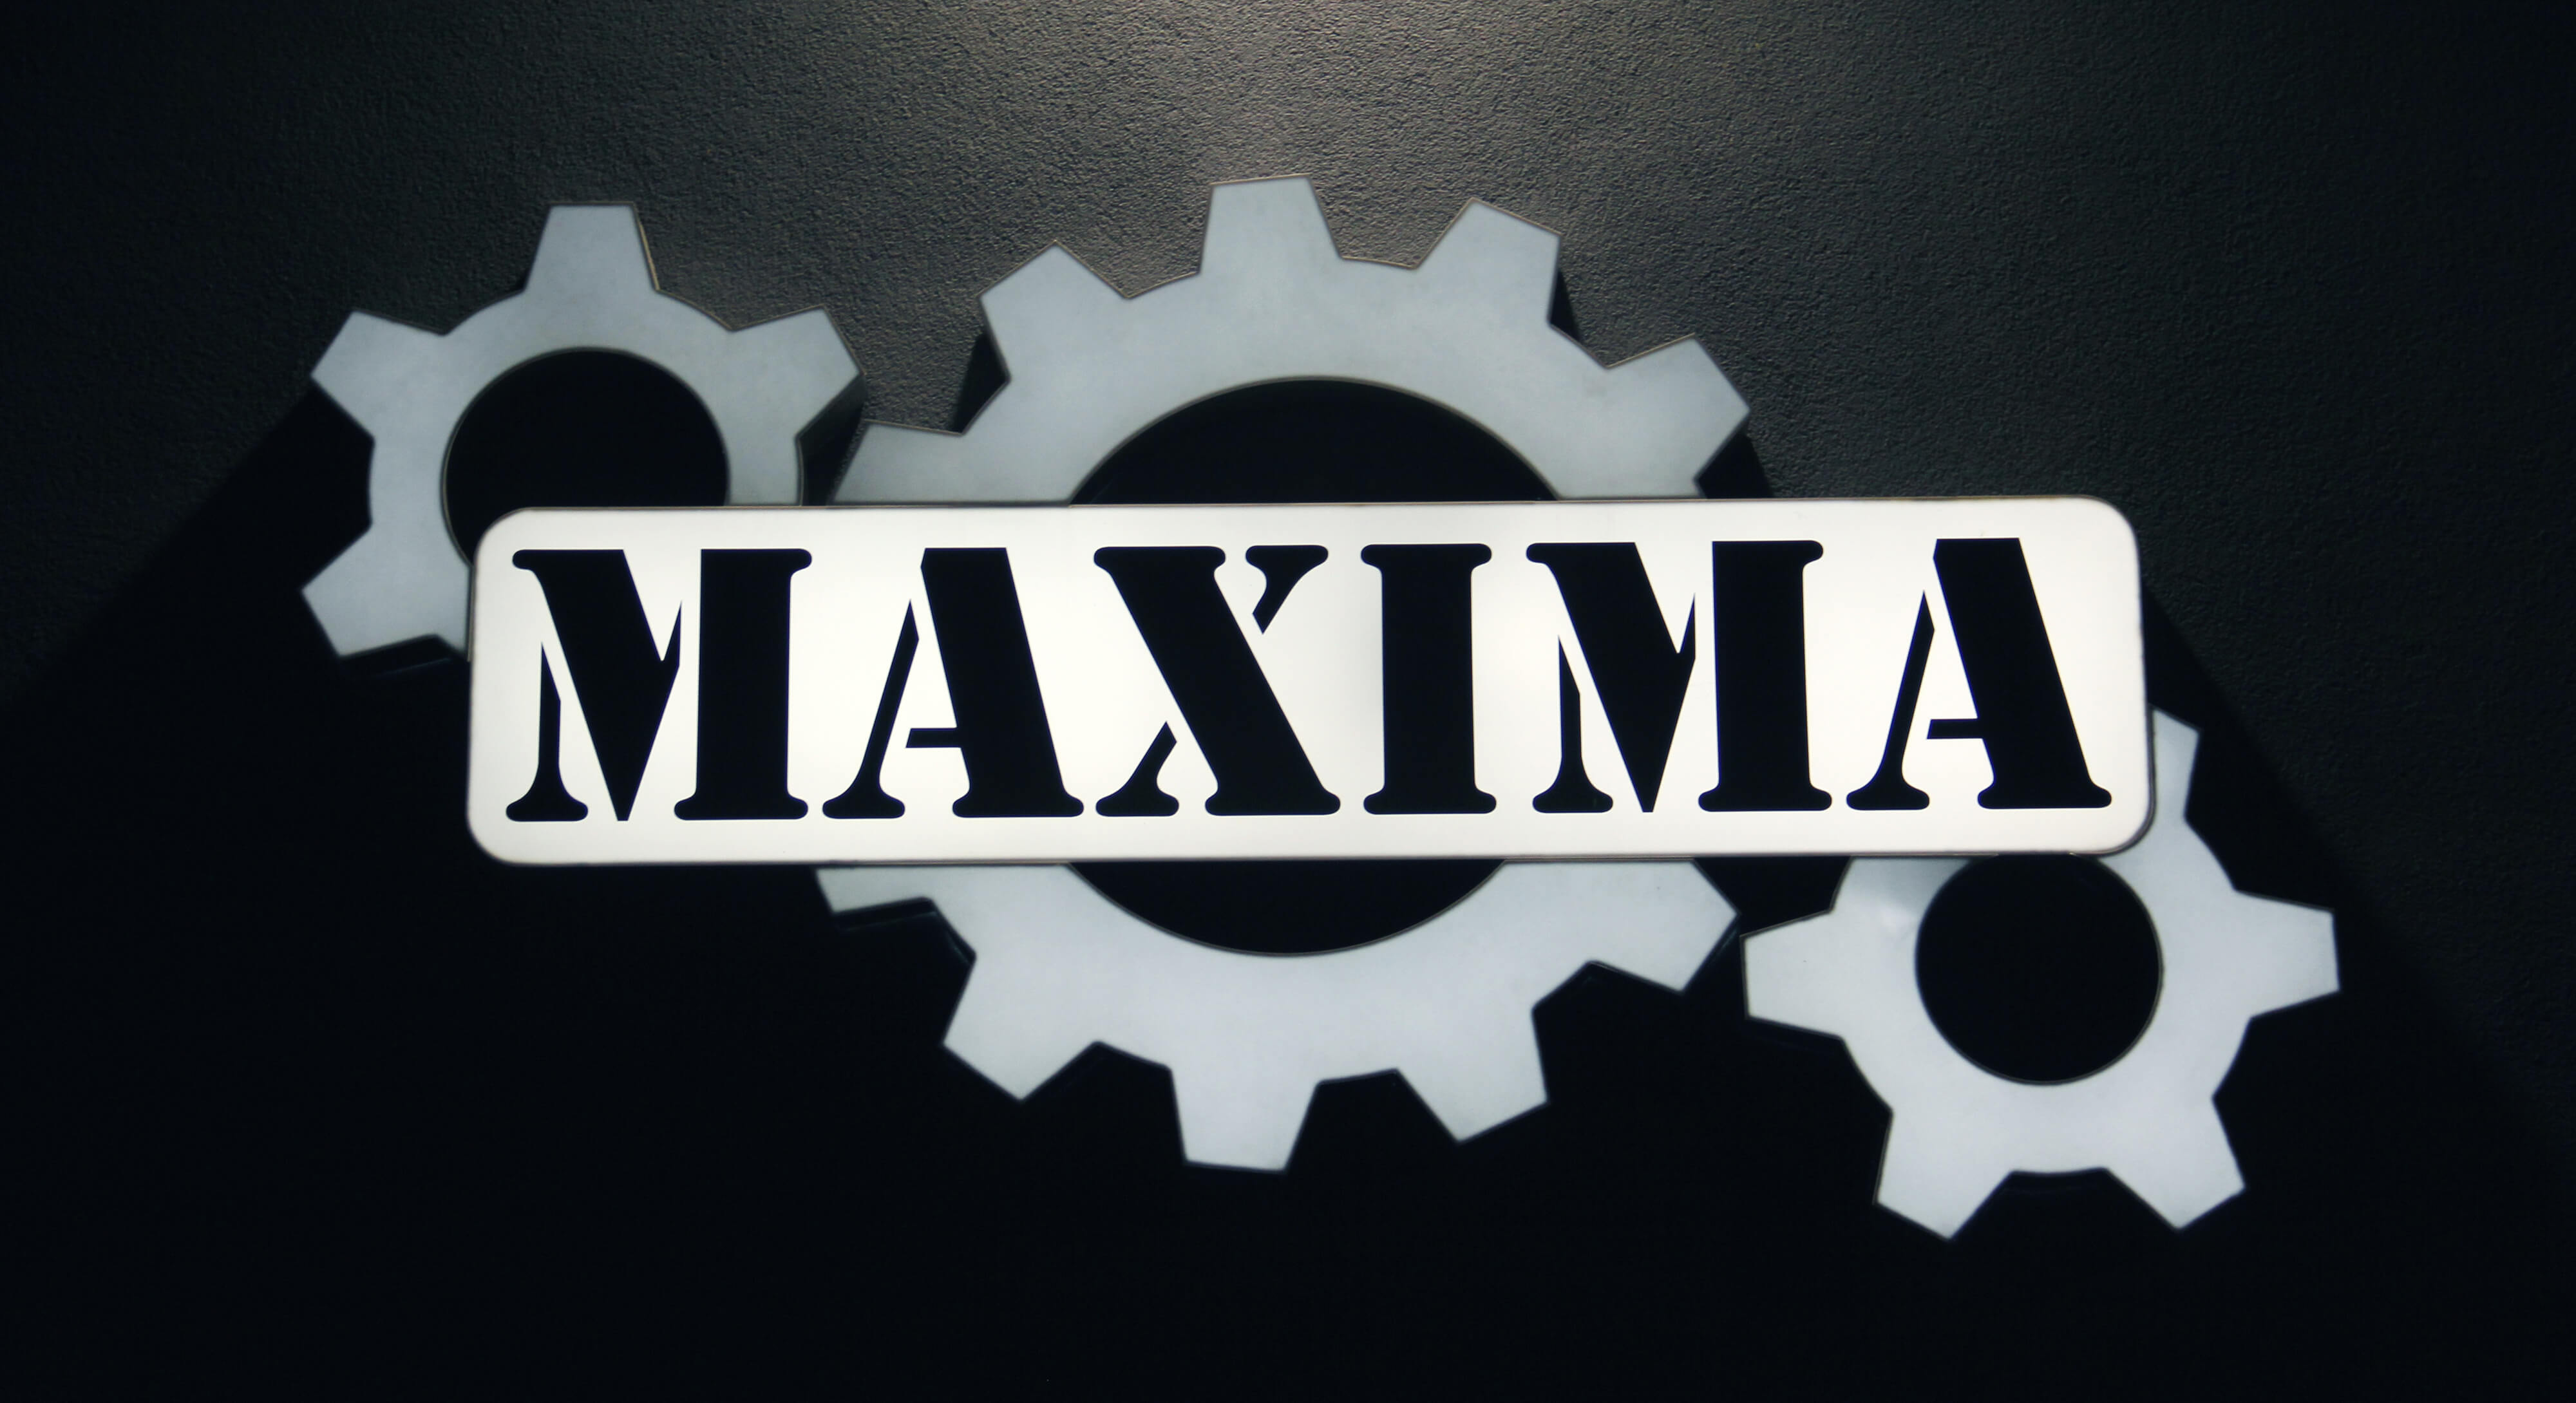 Maxima - Maxima - led panel on the wall with company logo, made of plexiglass